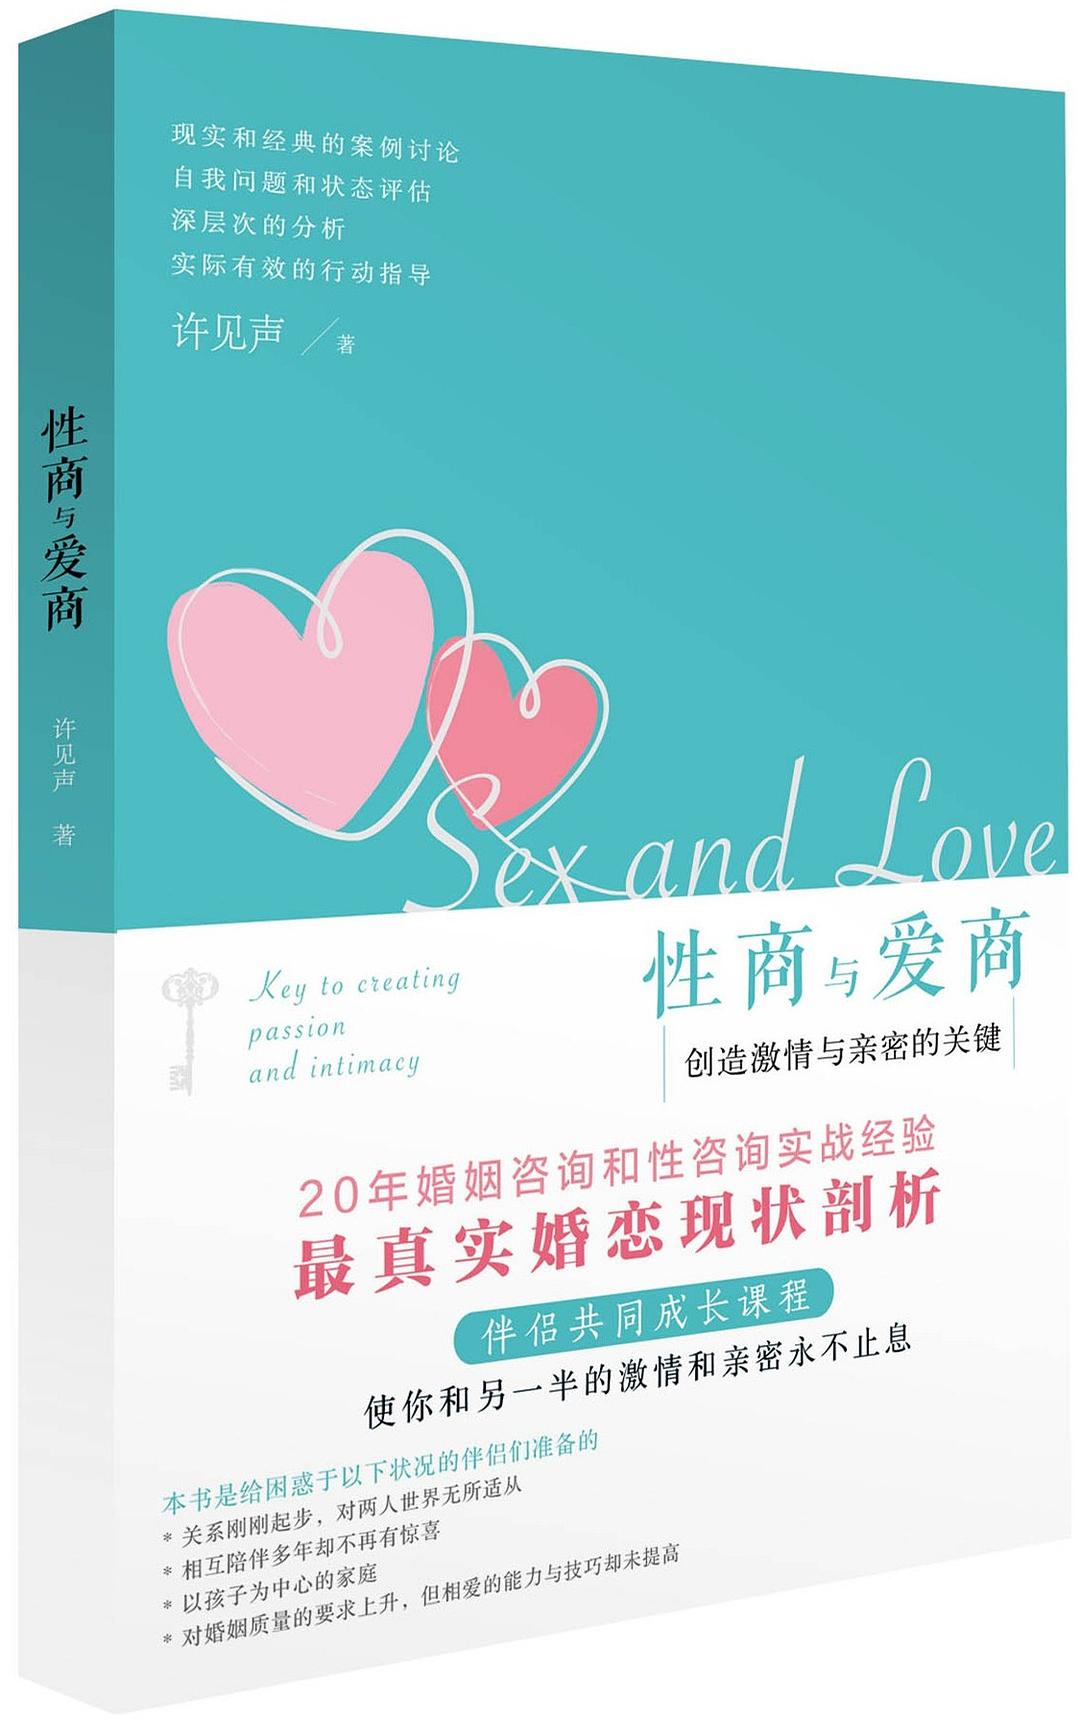 《性商与爱商：创造激情与亲密的关键》PDF扫描版插图